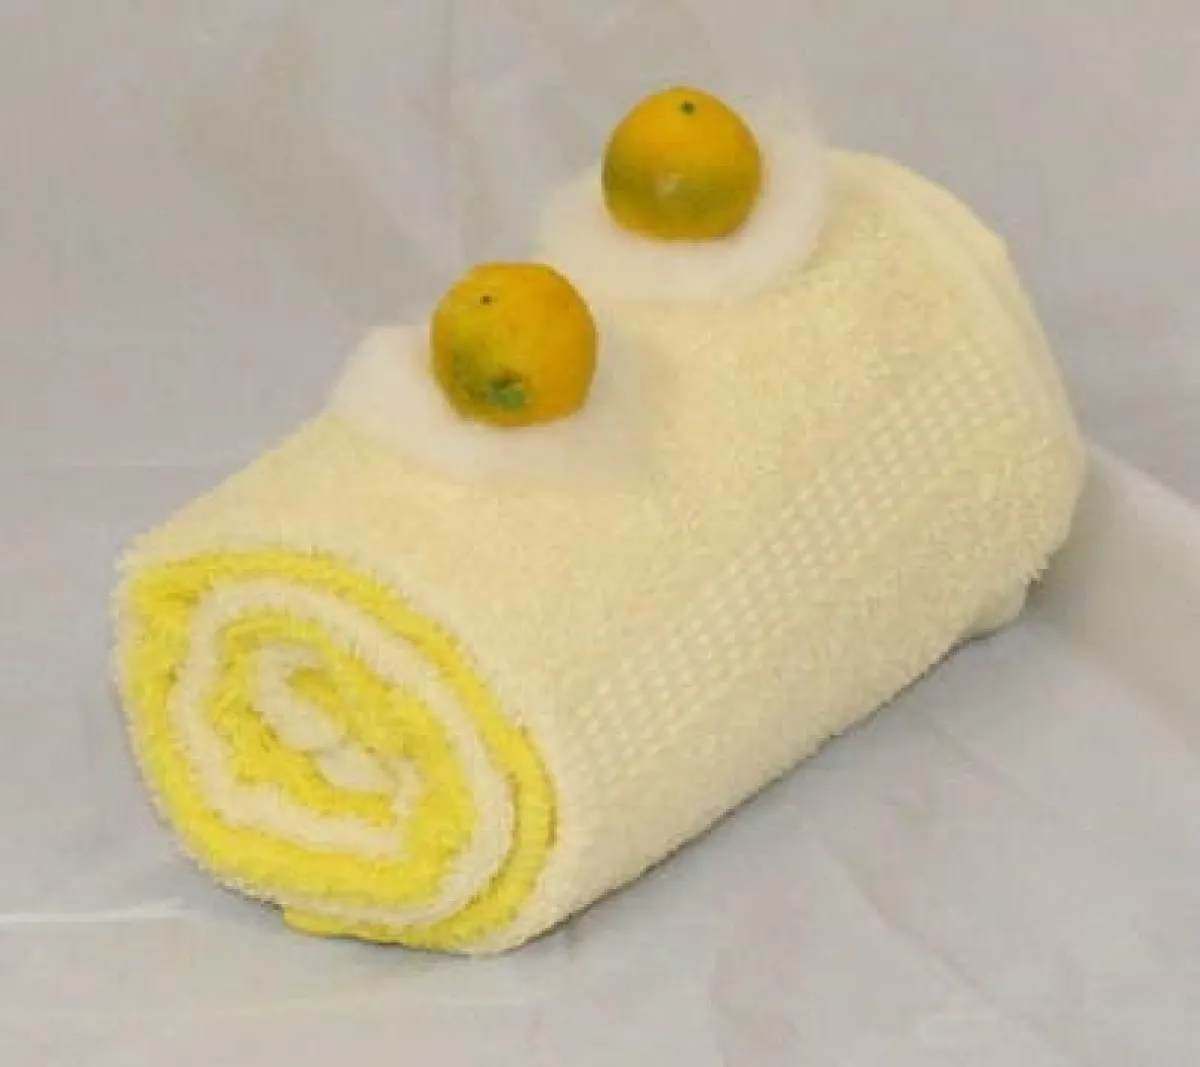 Handtuchtorte Handtuchrolle Zitrone gelb